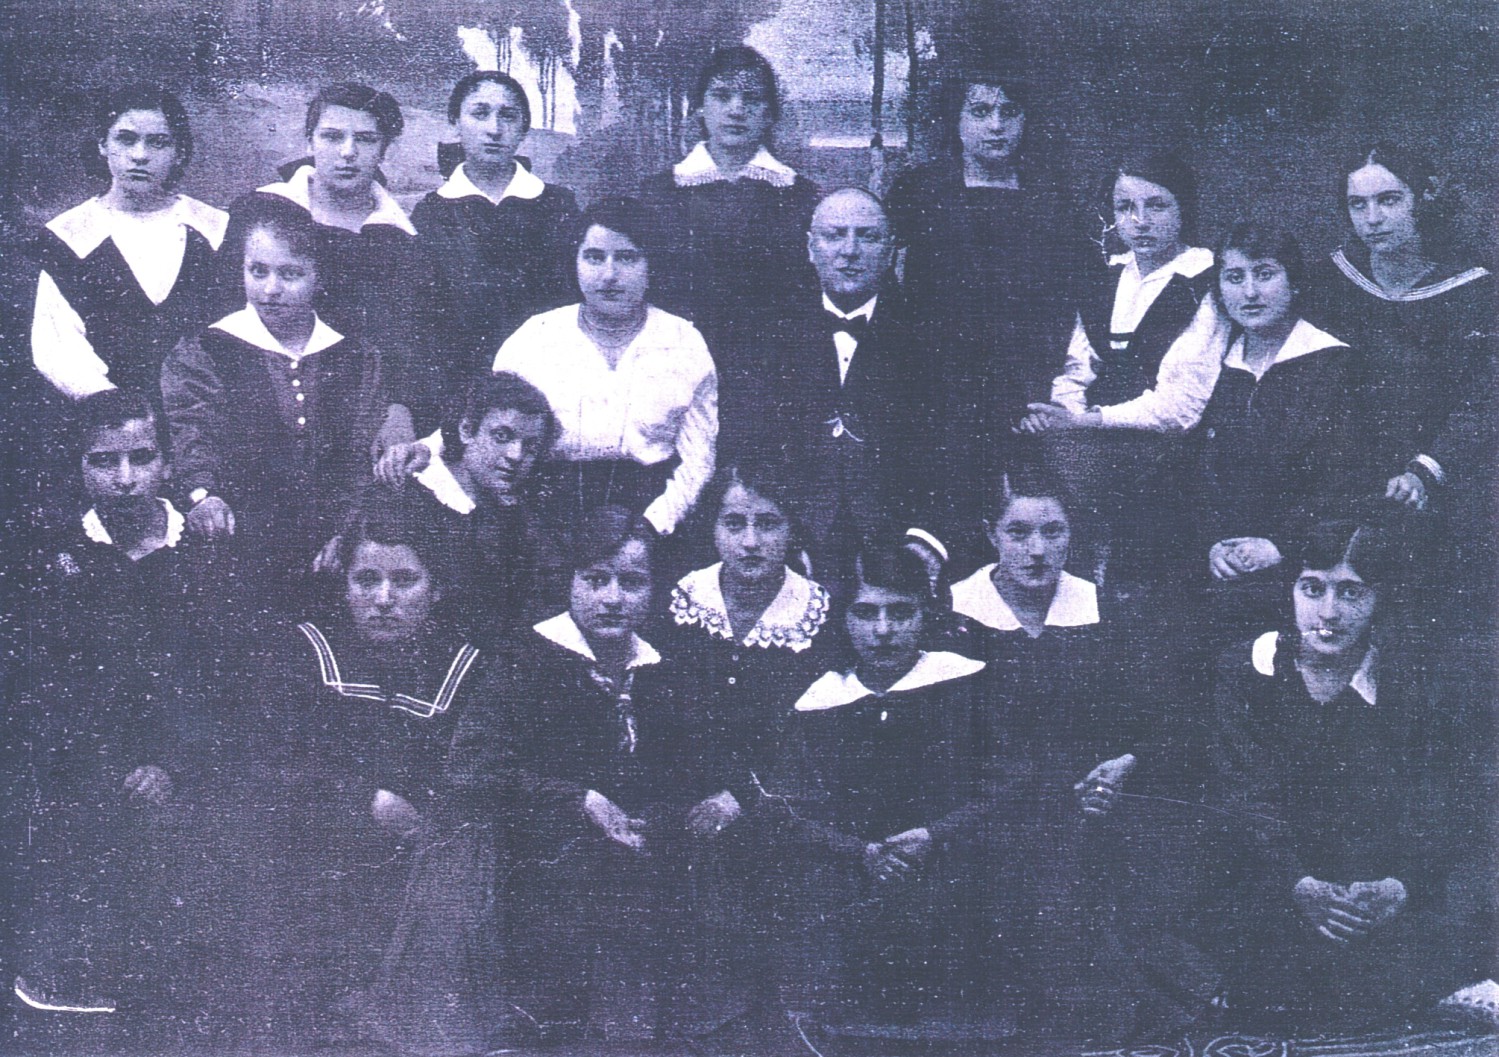 Szymon Goldlust z uczennicami gimnazjum przed II wojna światową (źródło: Księga Pamięci Łomżyńskich Żydów)